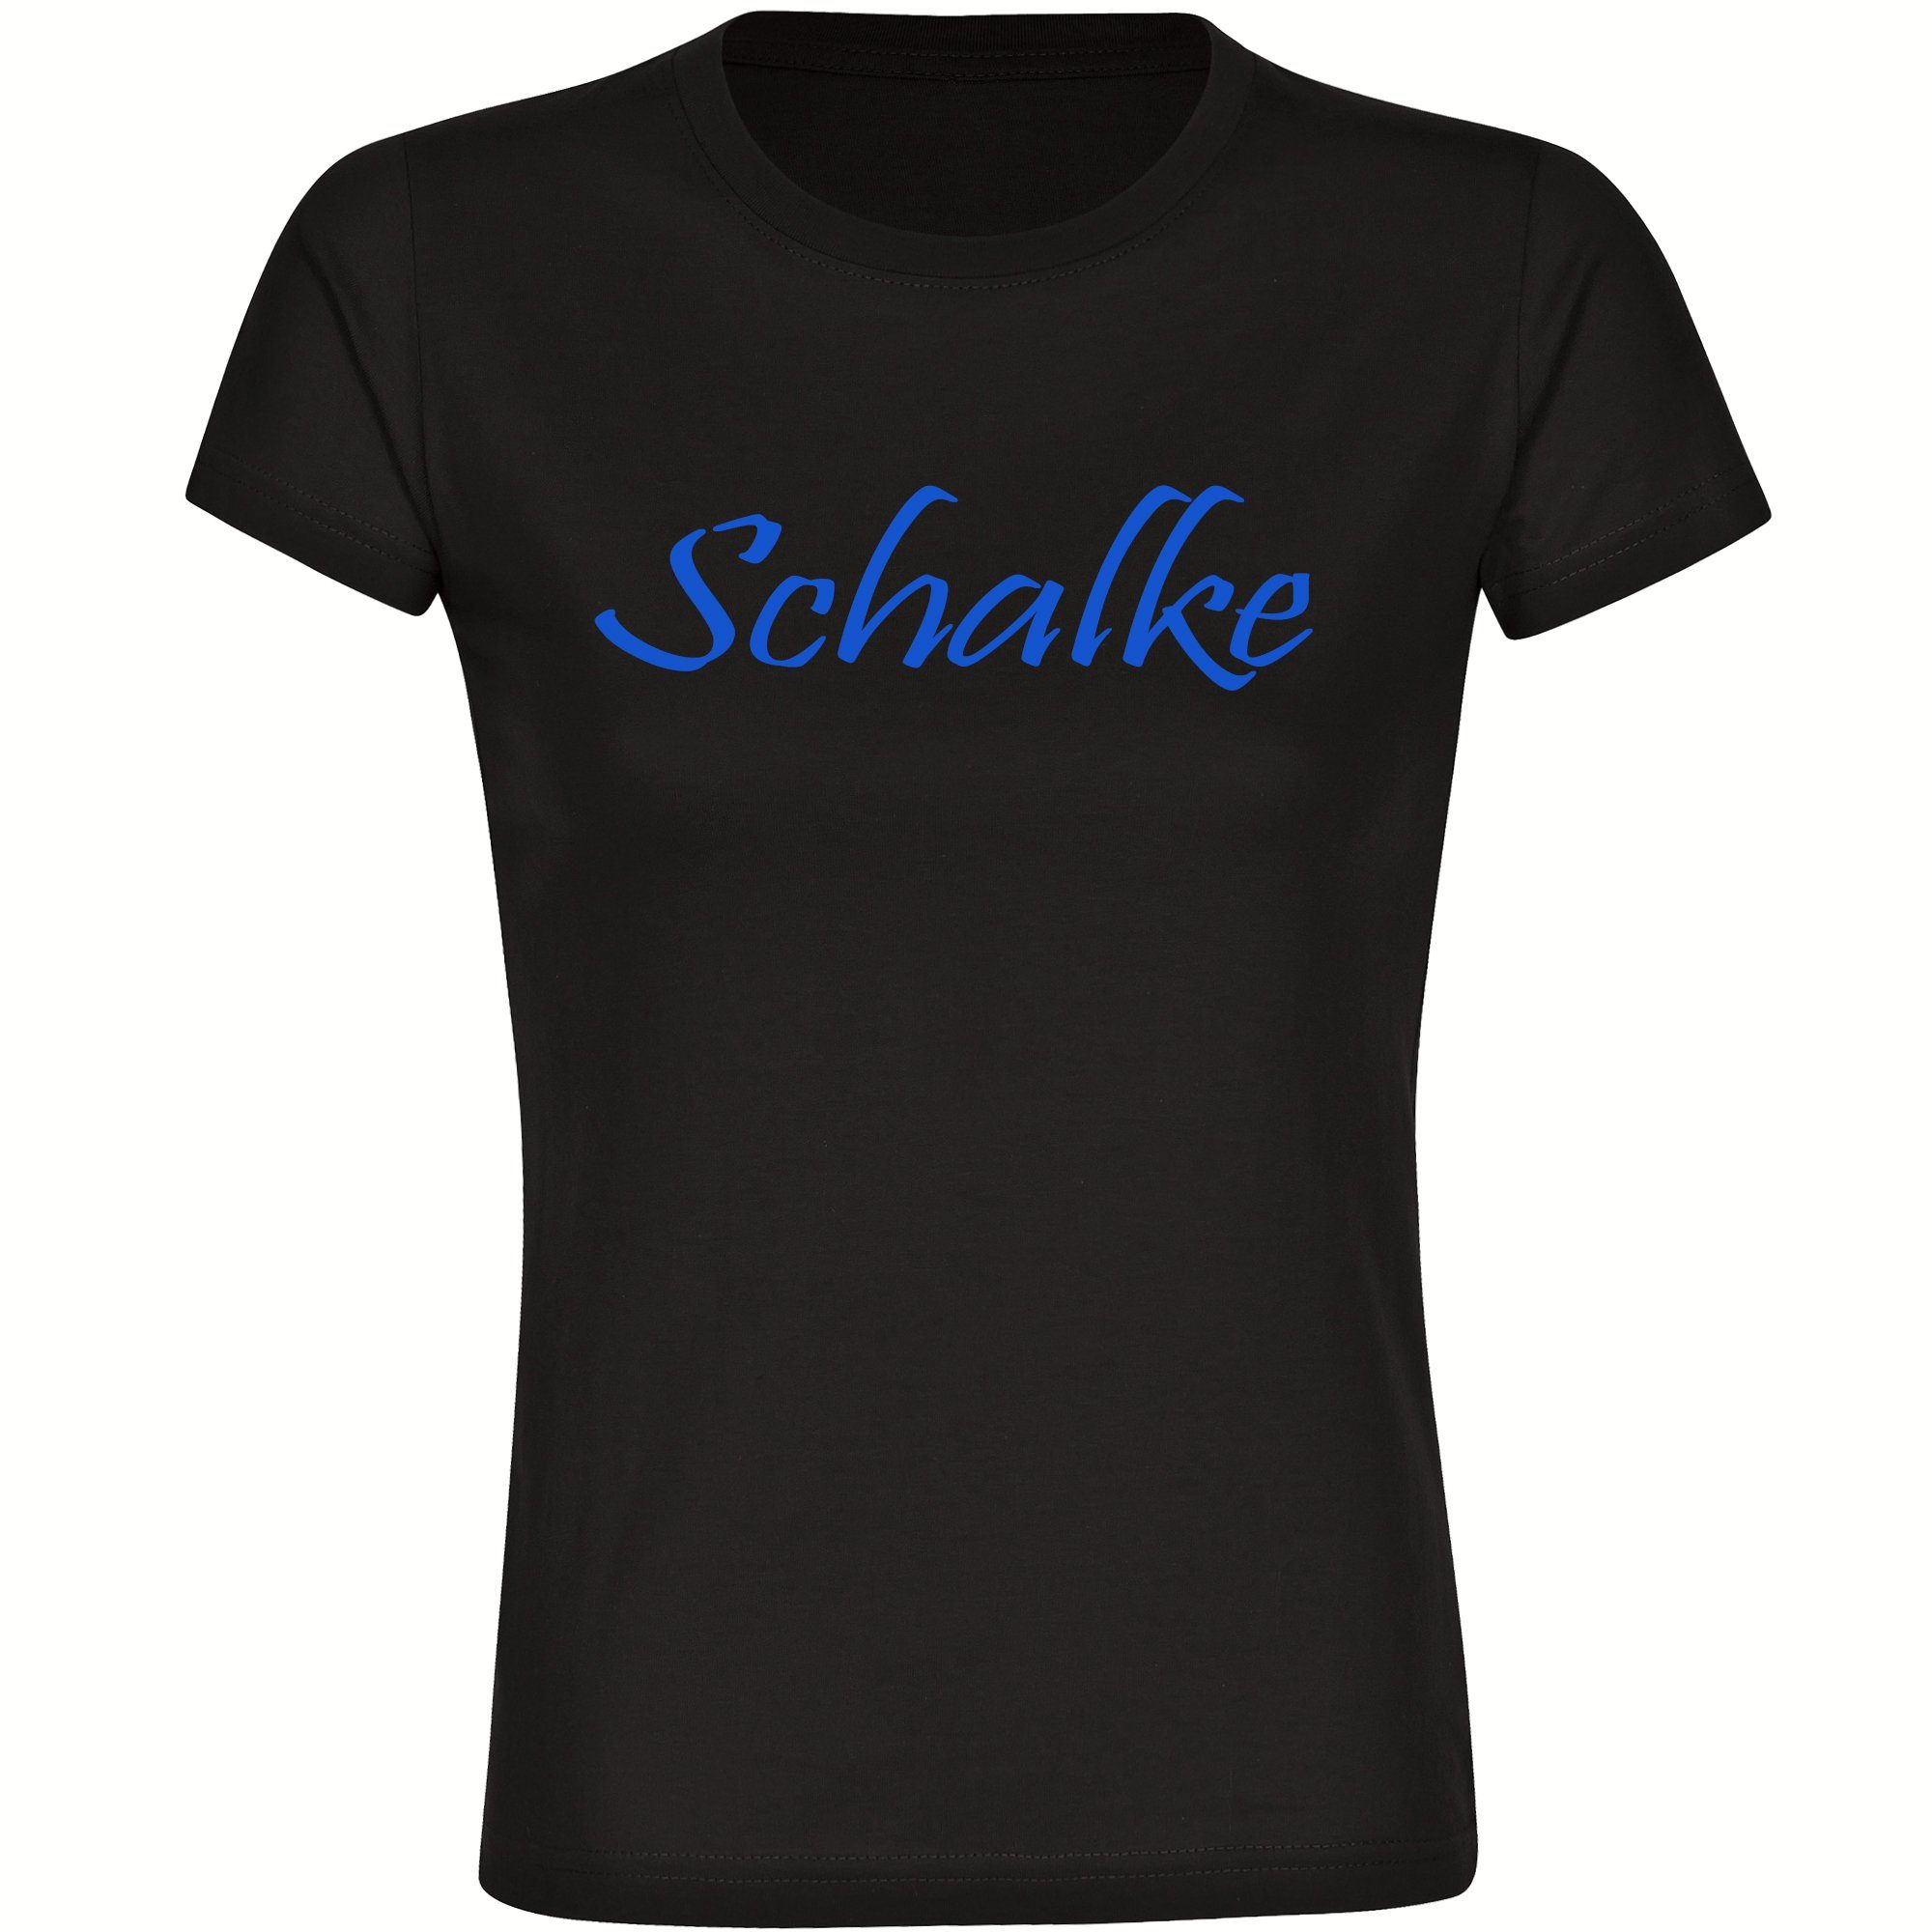 multifanshop T-Shirt Damen Schalke - Schriftzug - Frauen